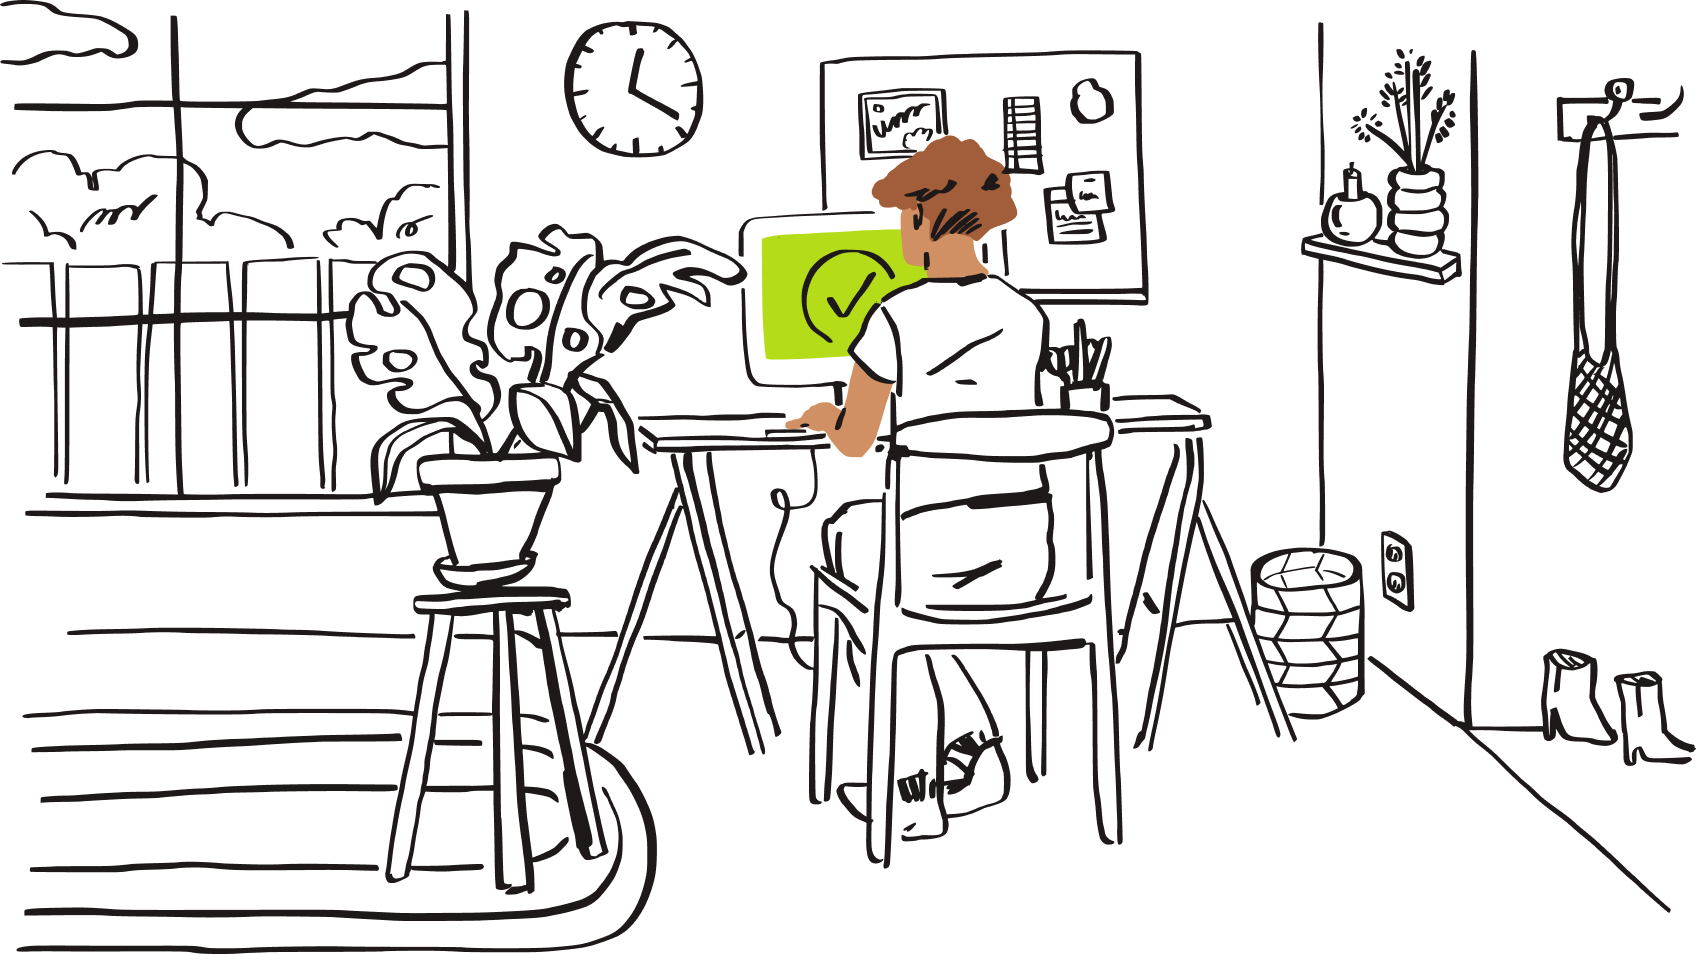 En illustrasjon av en person som sitter ved en datamaskin med en grønn hake på skjermen.